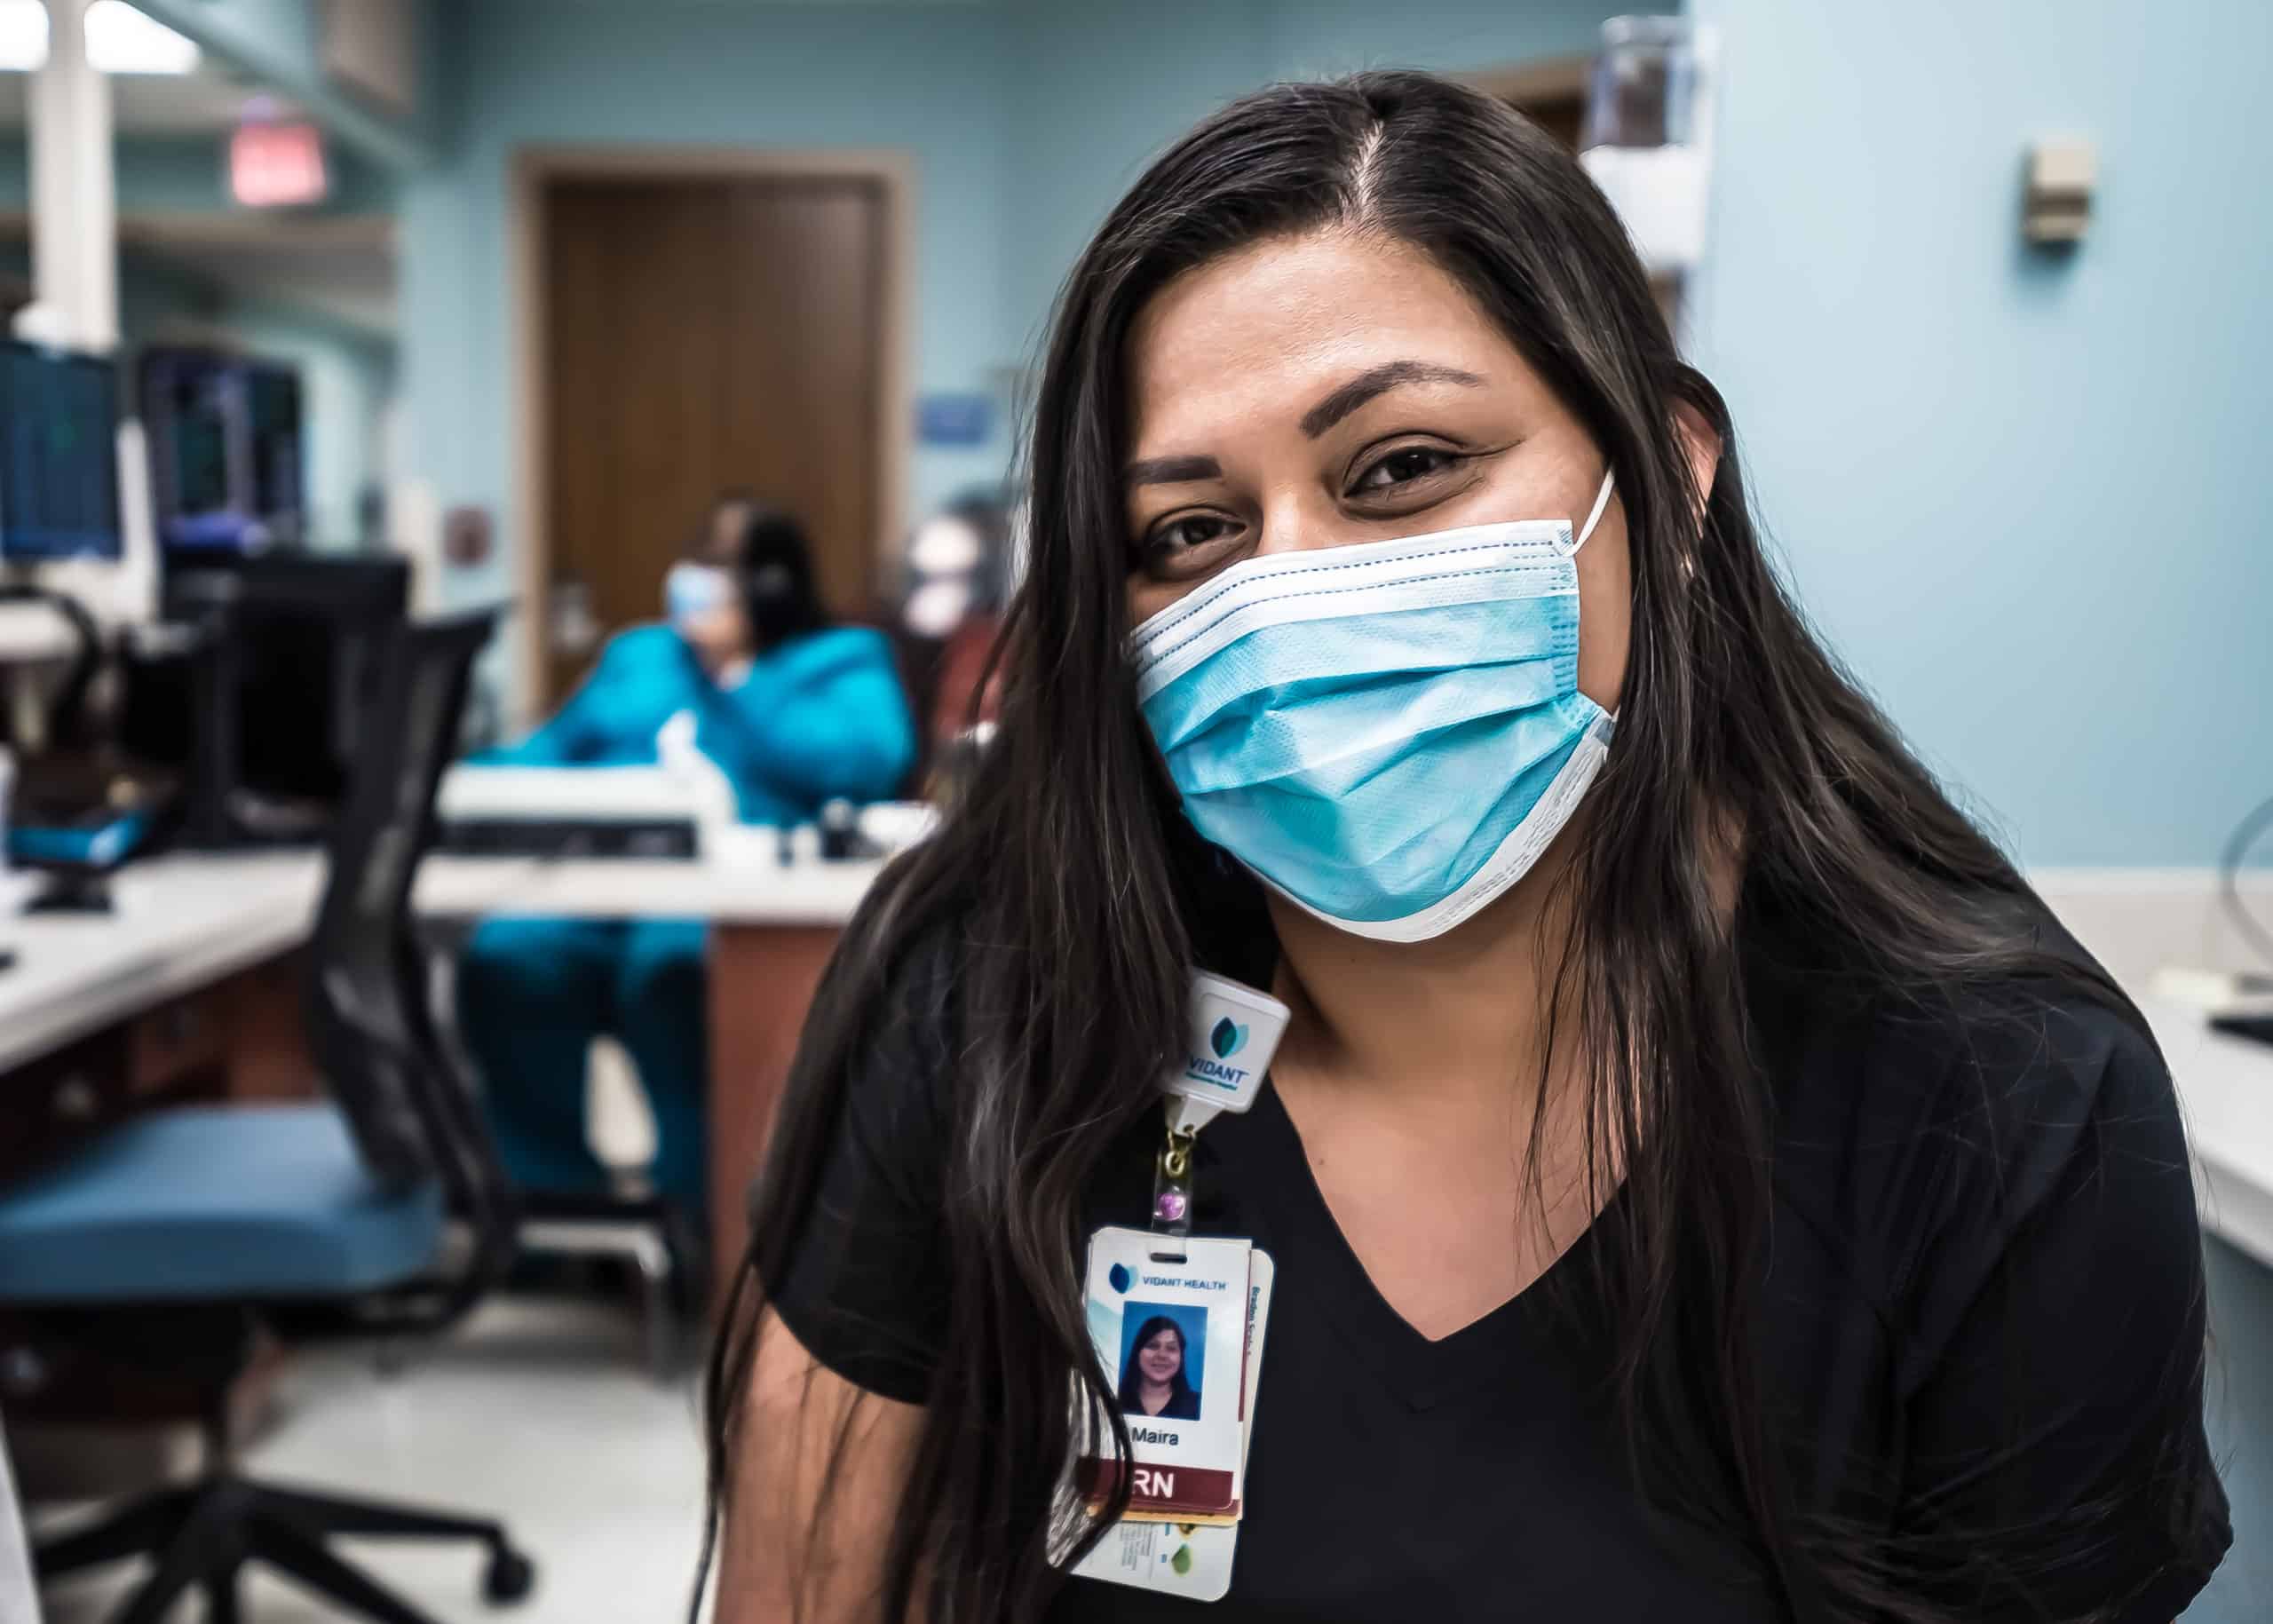 ECU Health nurse Maira Sanchez smiles under her mask at a nurses station at ECU Health Medical Center.